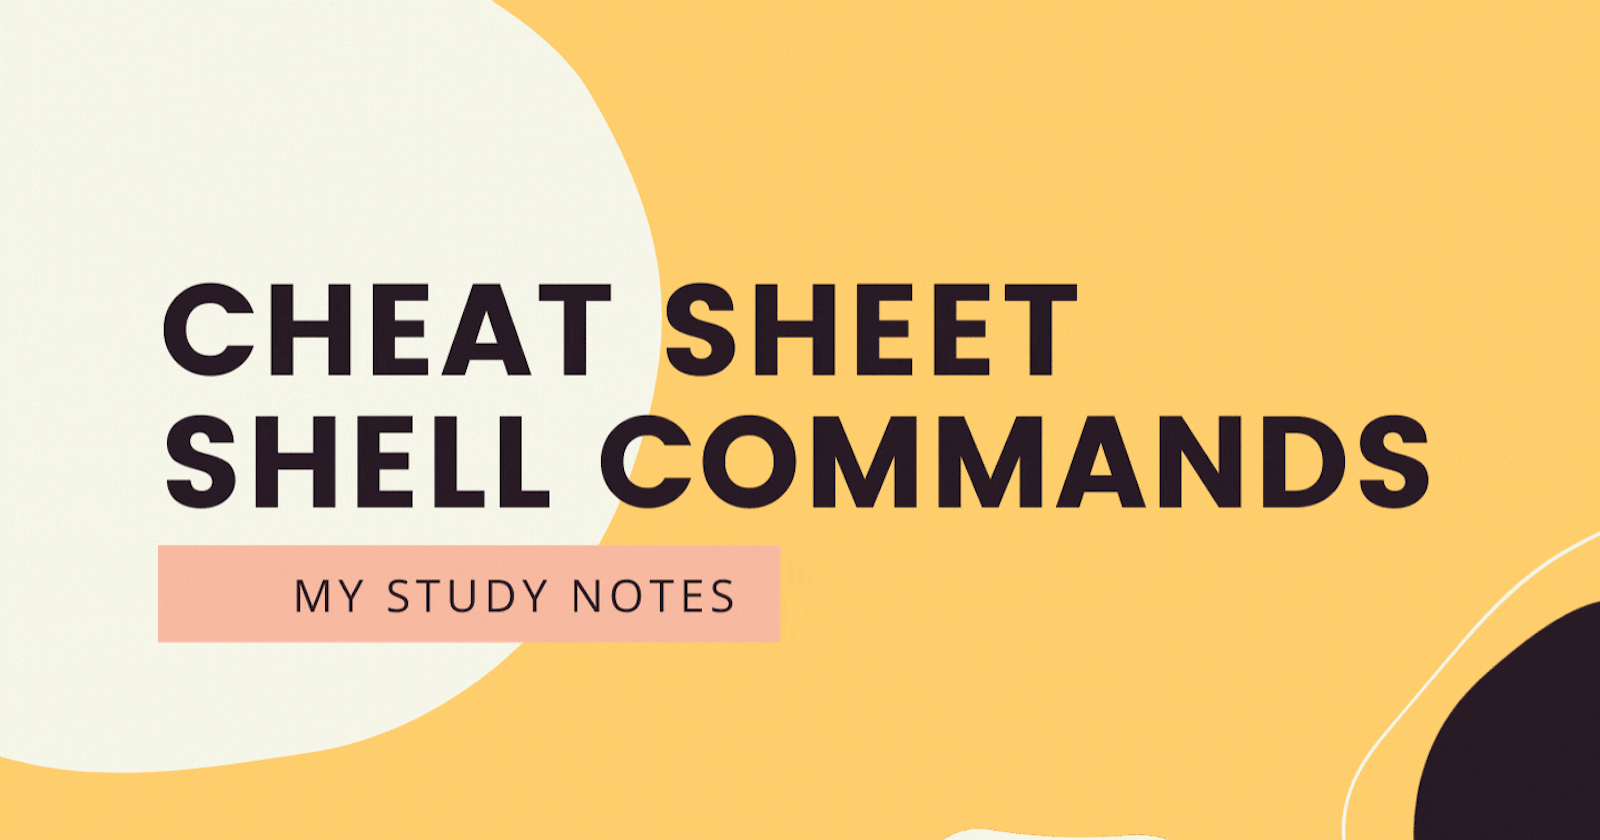 Shell Command Sheet Cheat